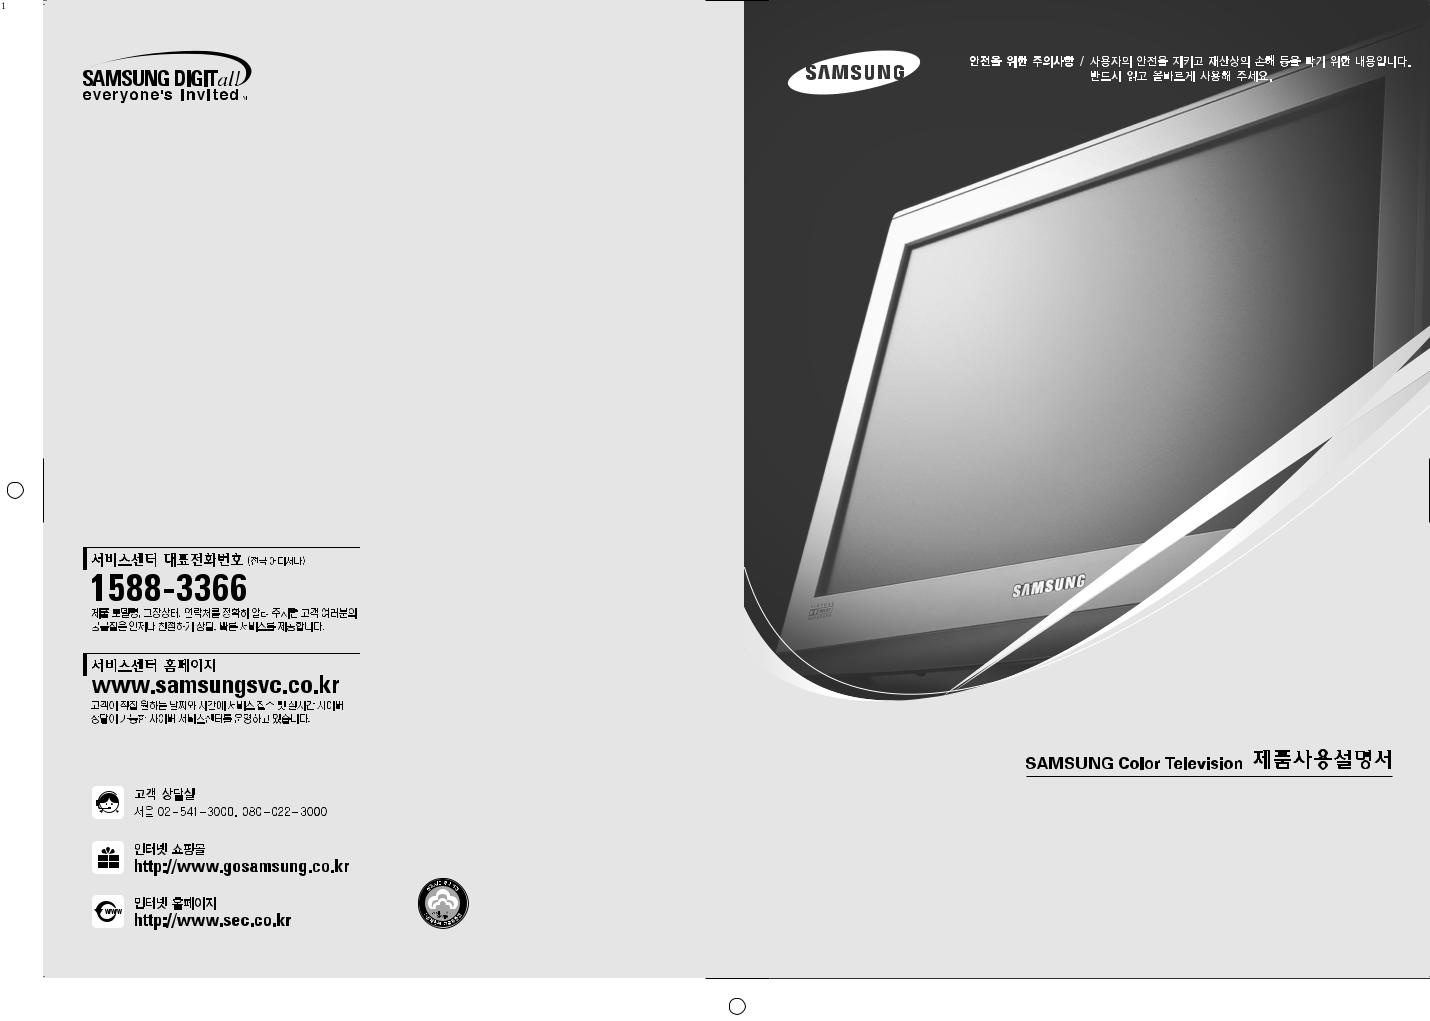 Samsung CT-29K10V, CT-29M20V, CT-29K12V, CT-29K6V User Manual